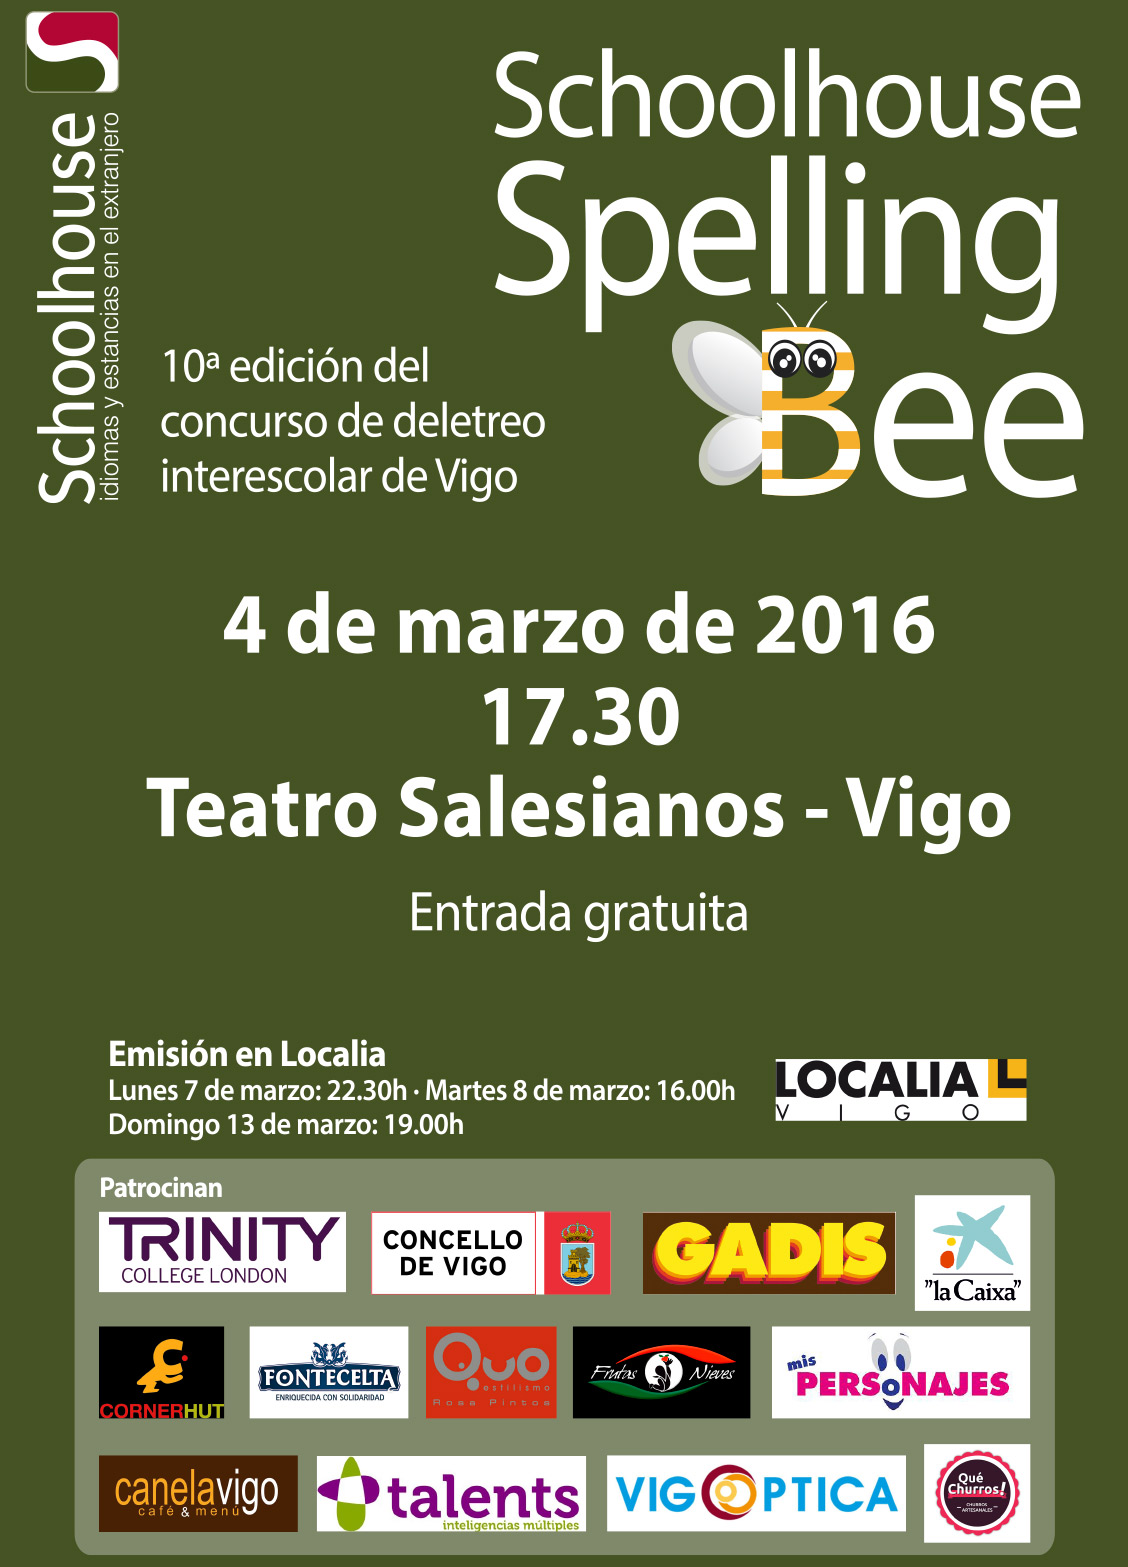 N.SPEELING BEE 16